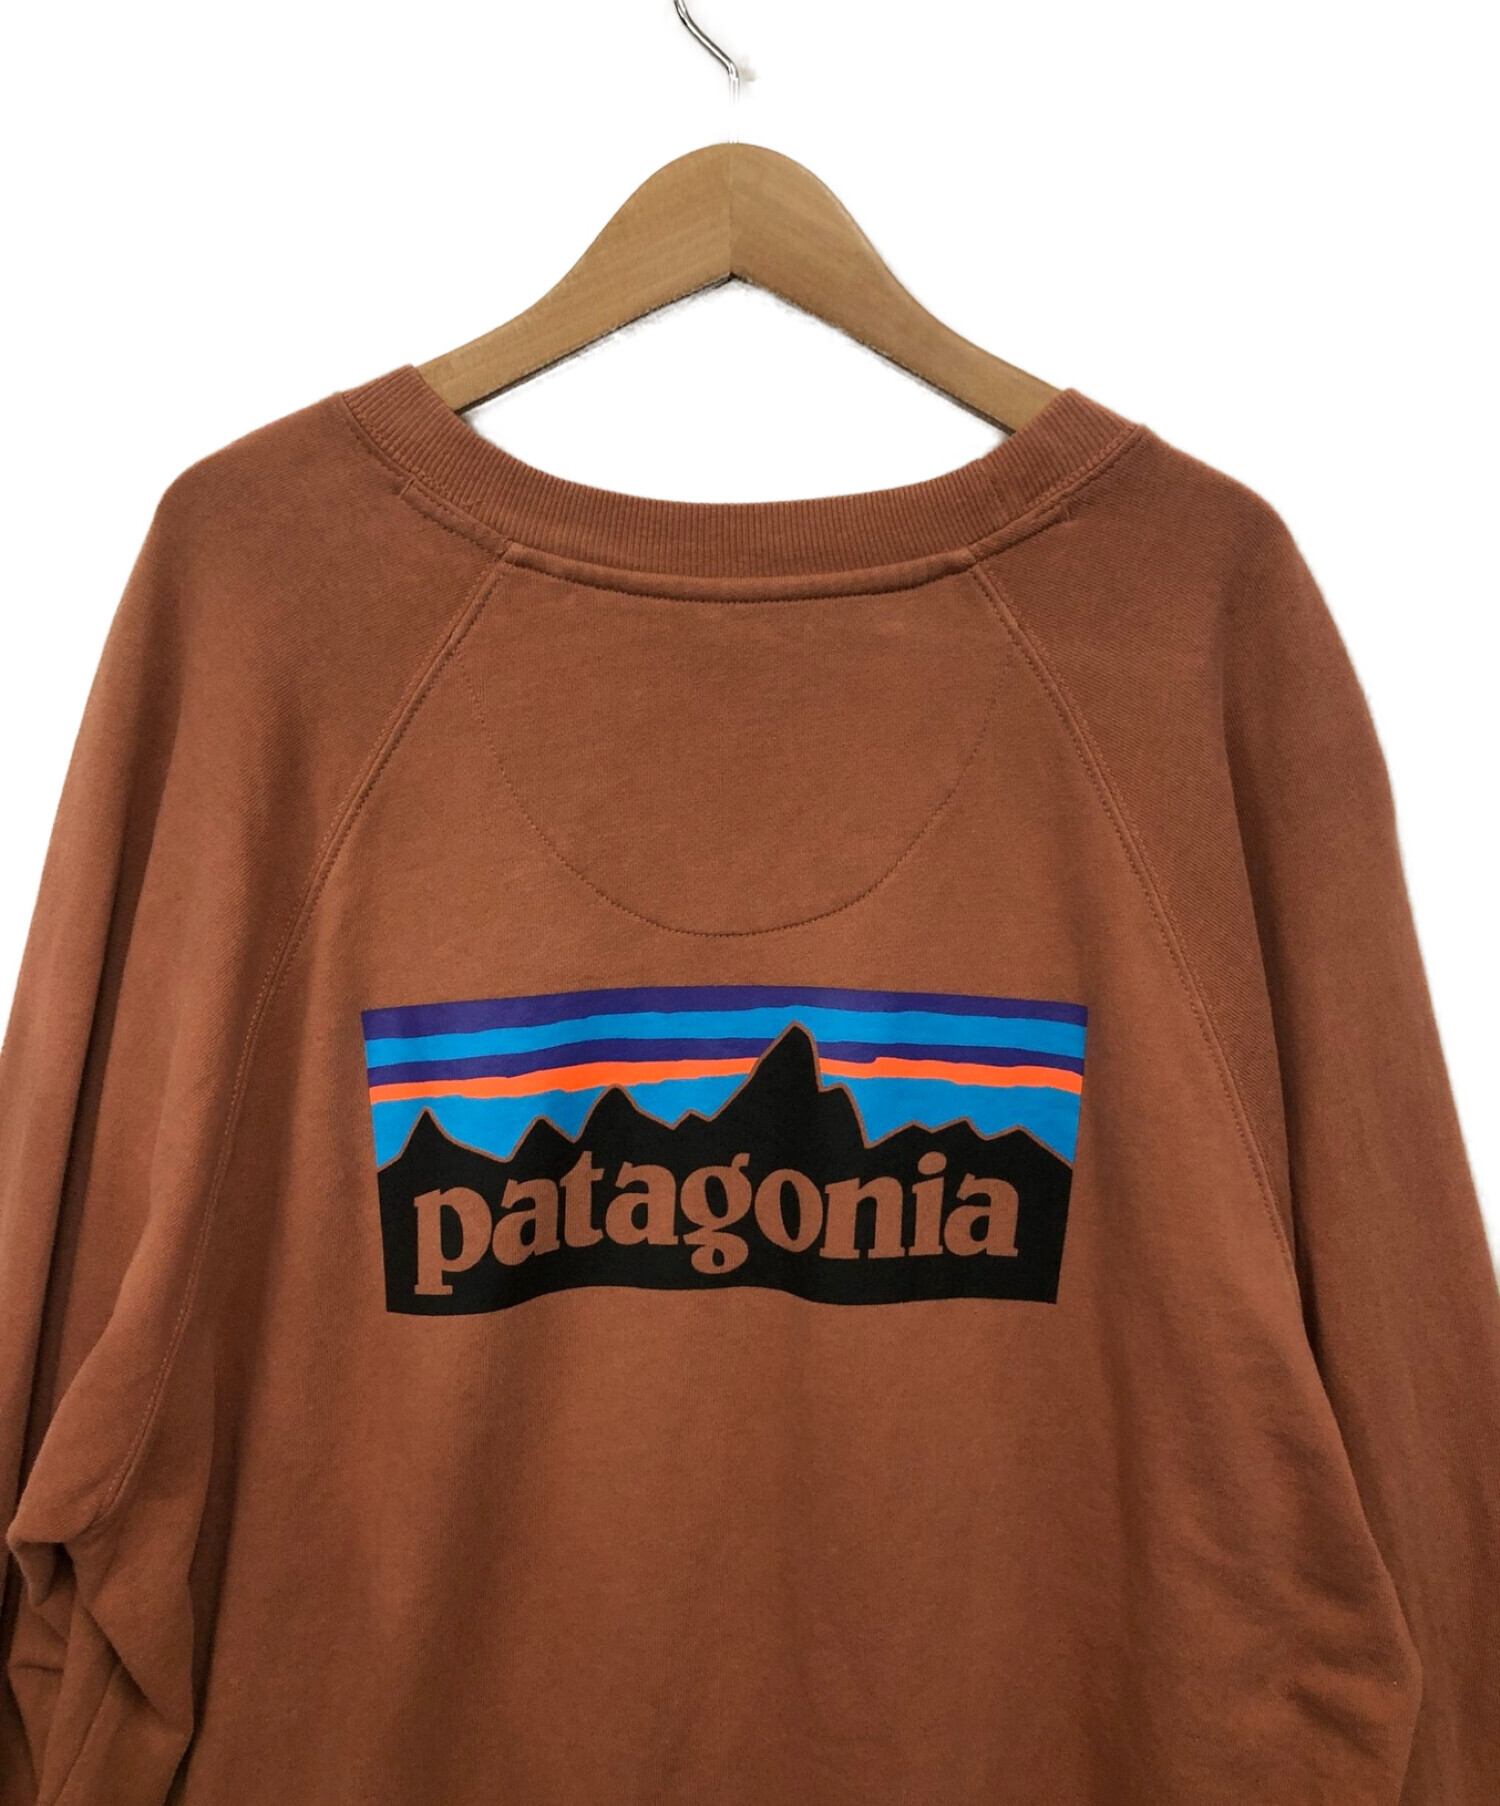 Patagonia (パタゴニア) スウェット ブラウン サイズ:L